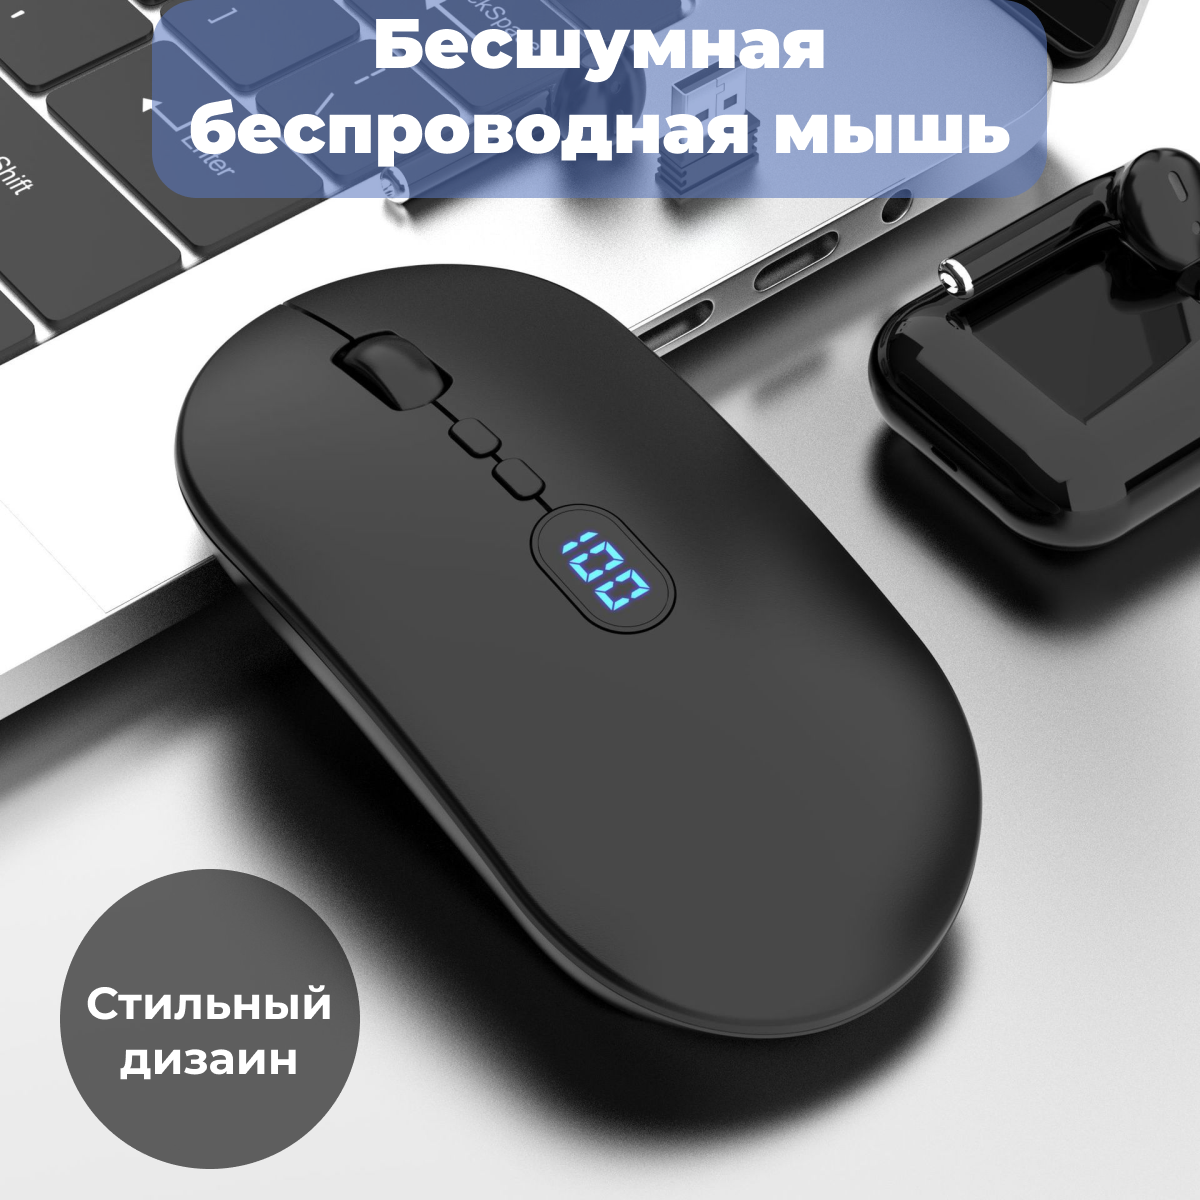 Мышь беспроводная на аккумуляторе для компьютера и ноутбука usb мышка wireless digital mouse DI-W30 бесшумная с индикатором заряда белая